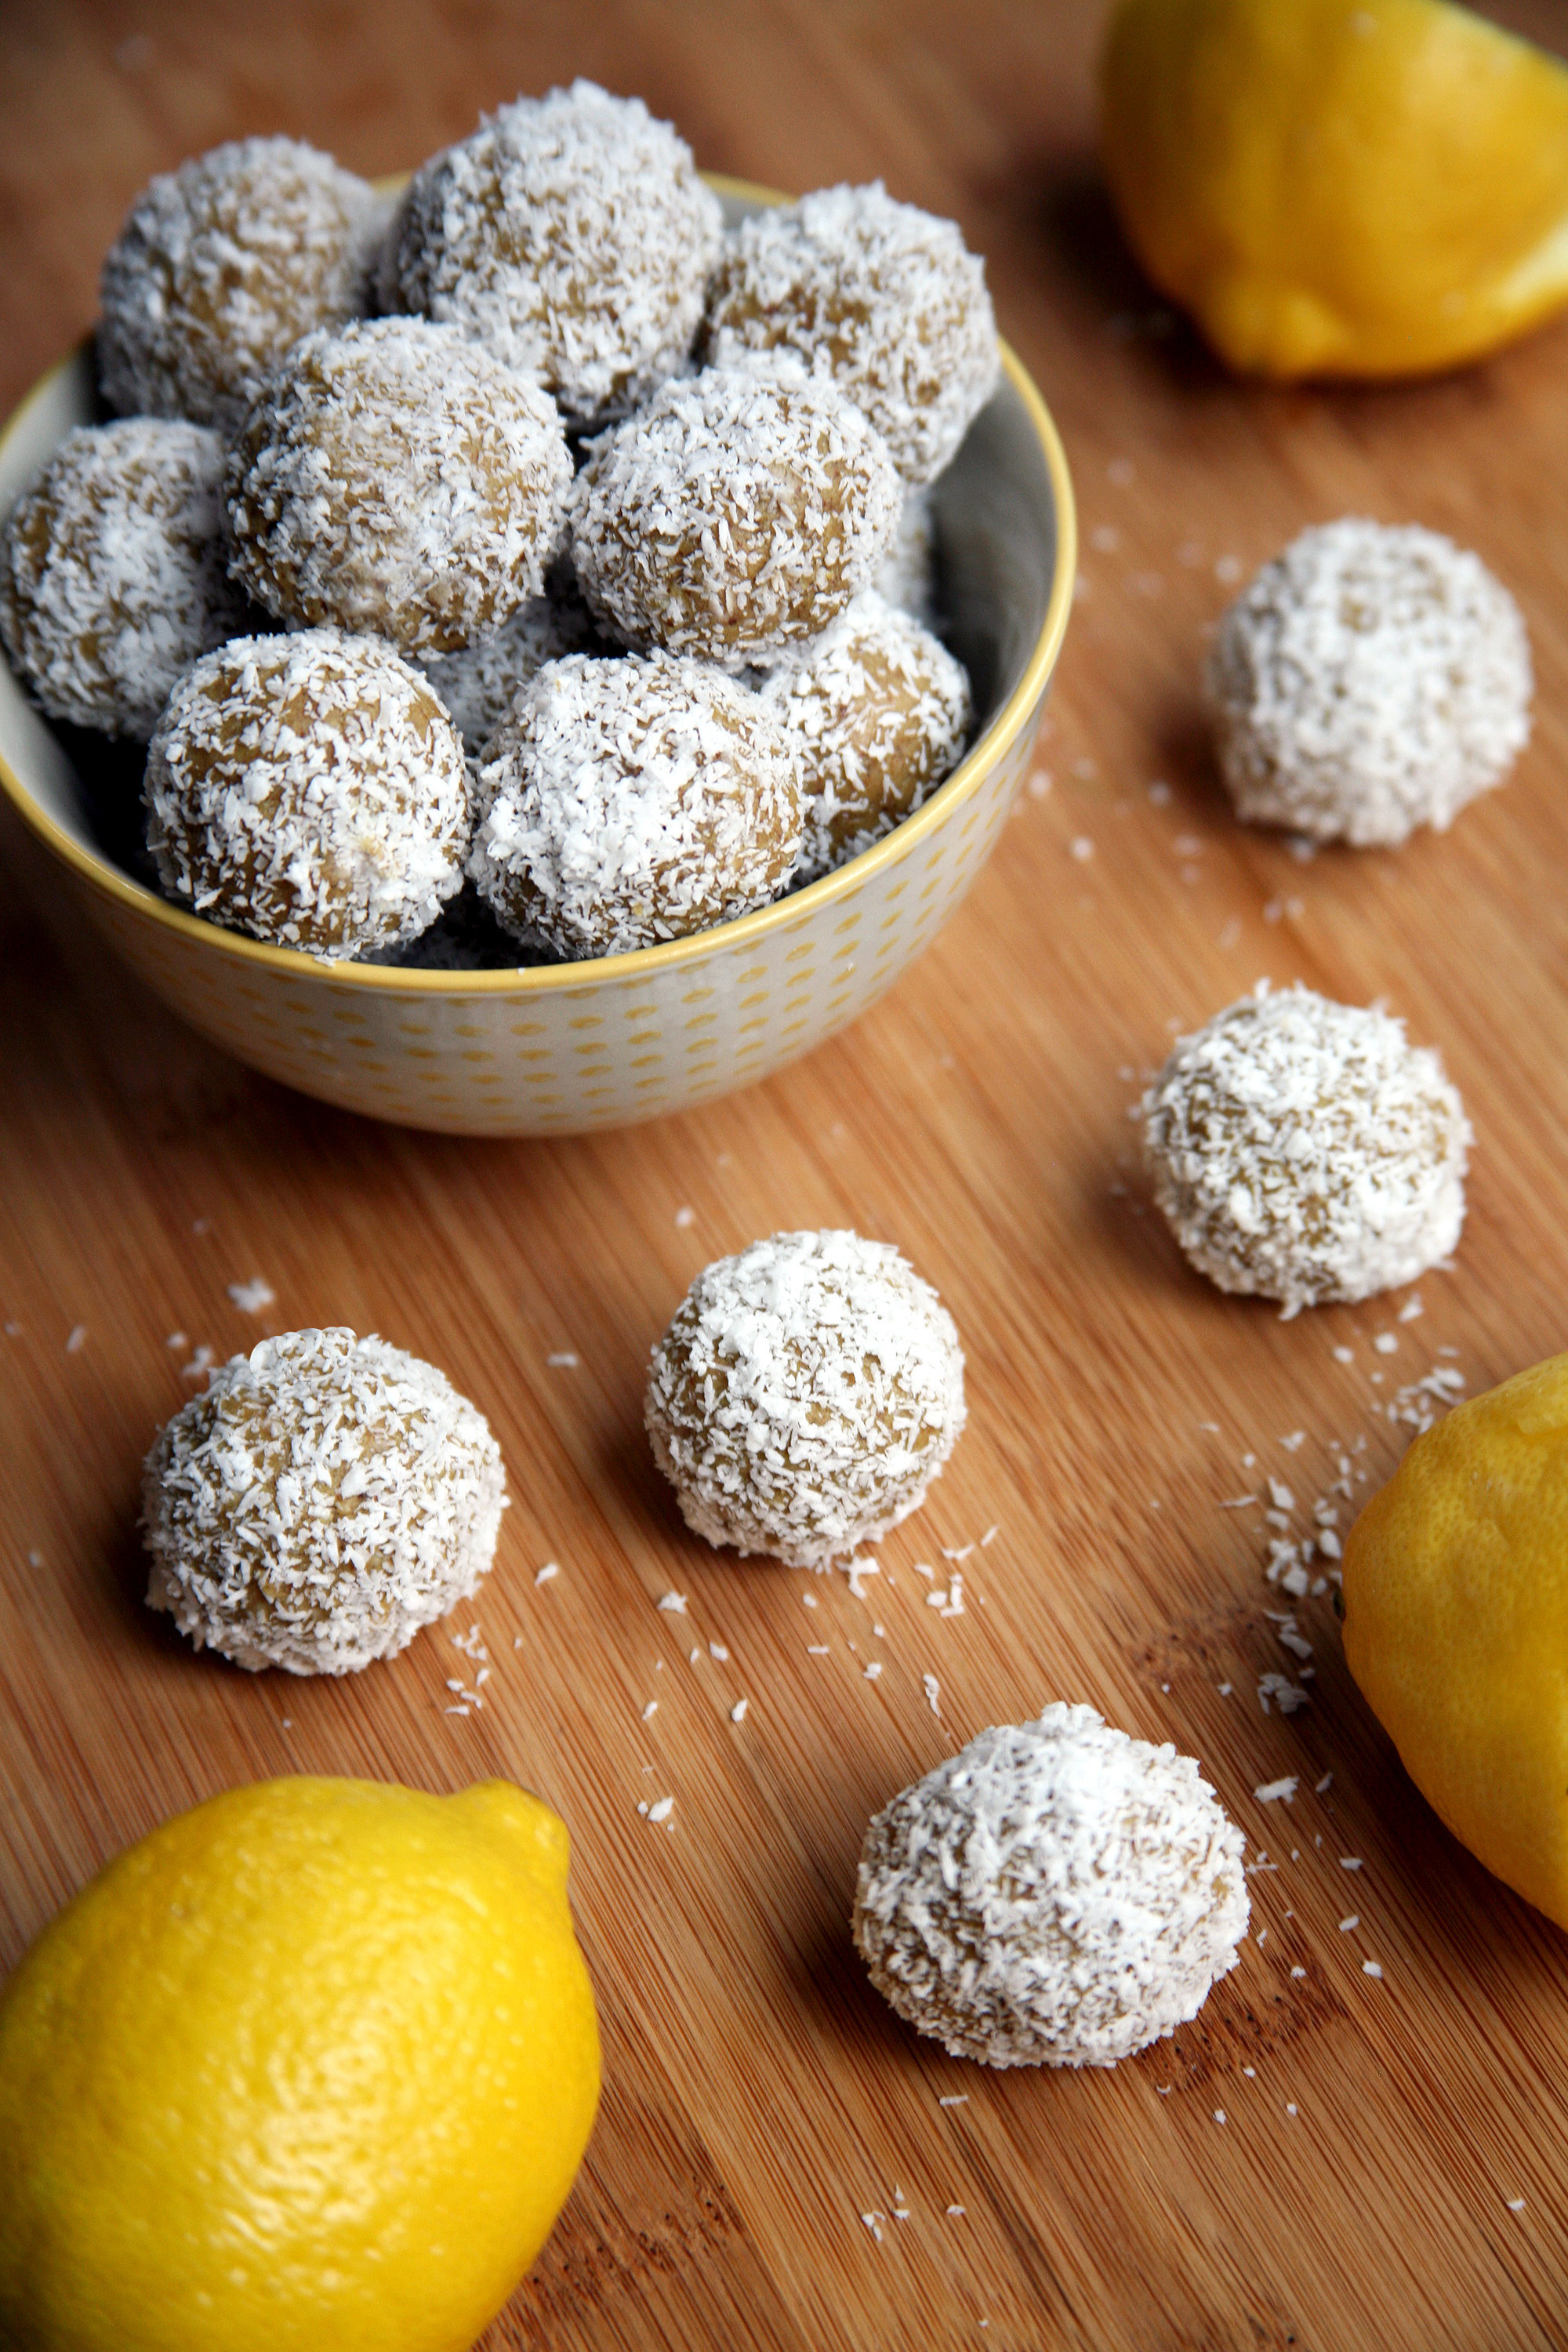 50-Calorie Lemon Coconut Protein Balls That Taste Like Summer!